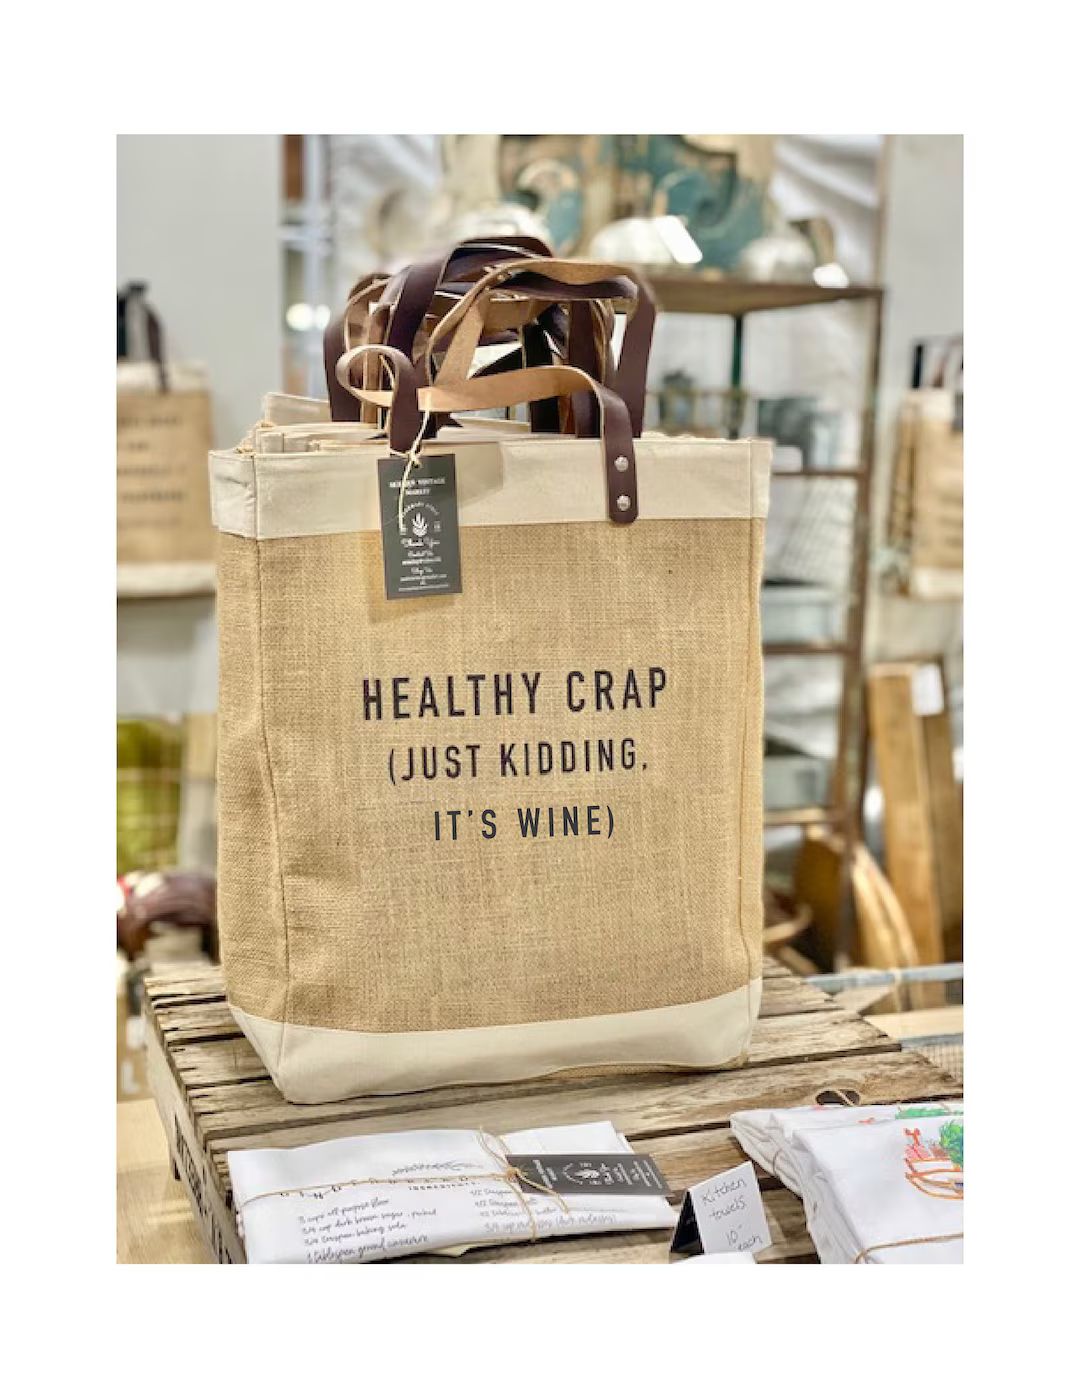 Healthy Crap|Quote Jute Bags|IT'S WINE|Organic Food|Beach Bag|Market Bag|Jute Tote bag|Shopping B... | Etsy (US)